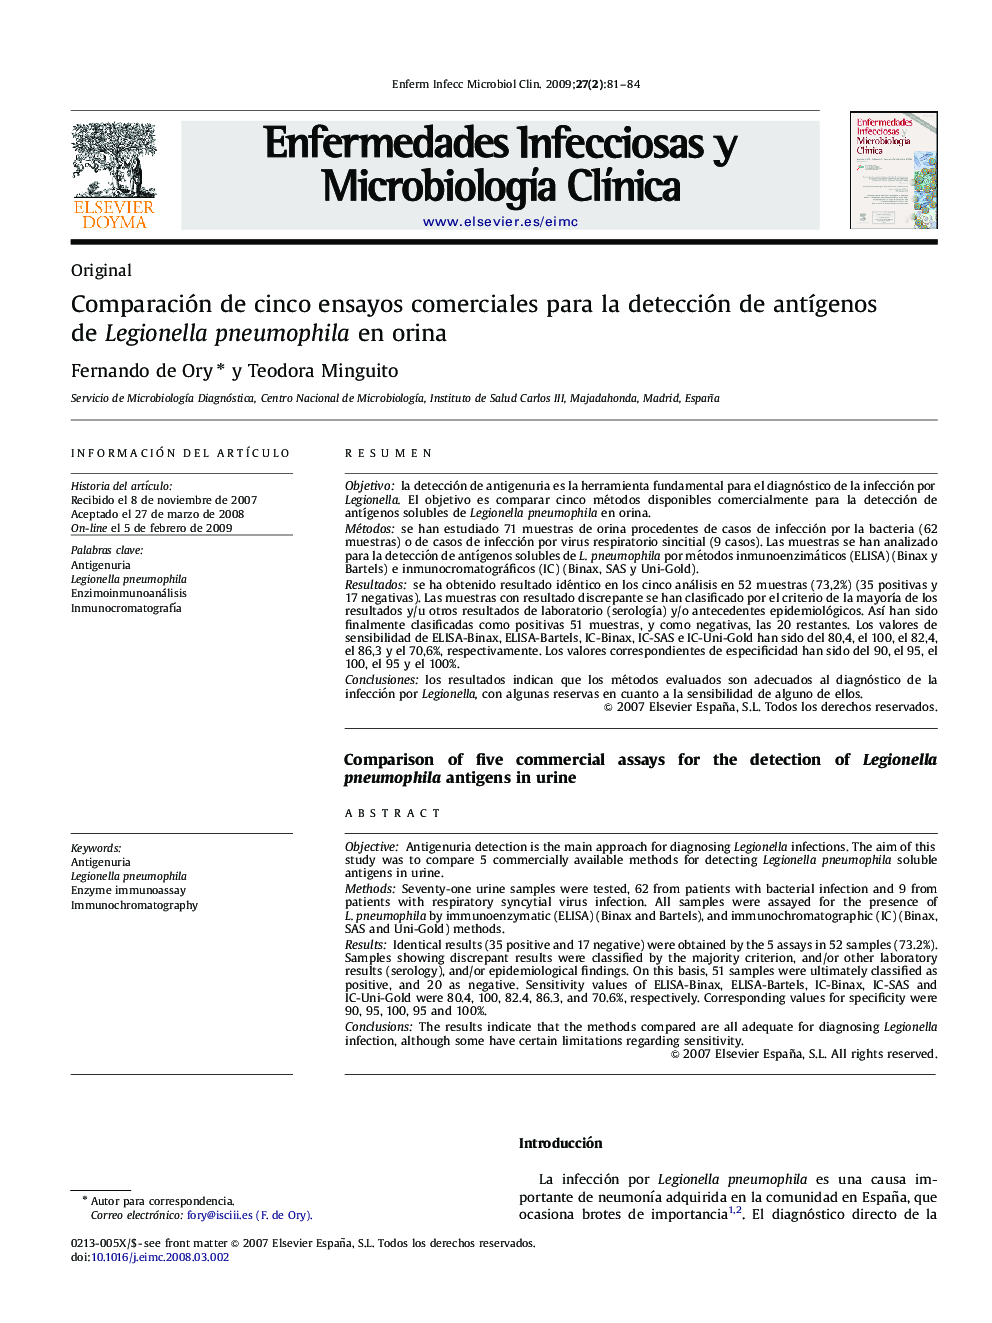 Comparación de cinco ensayos comerciales para la detección de antígenos de Legionella pneumophila en orina